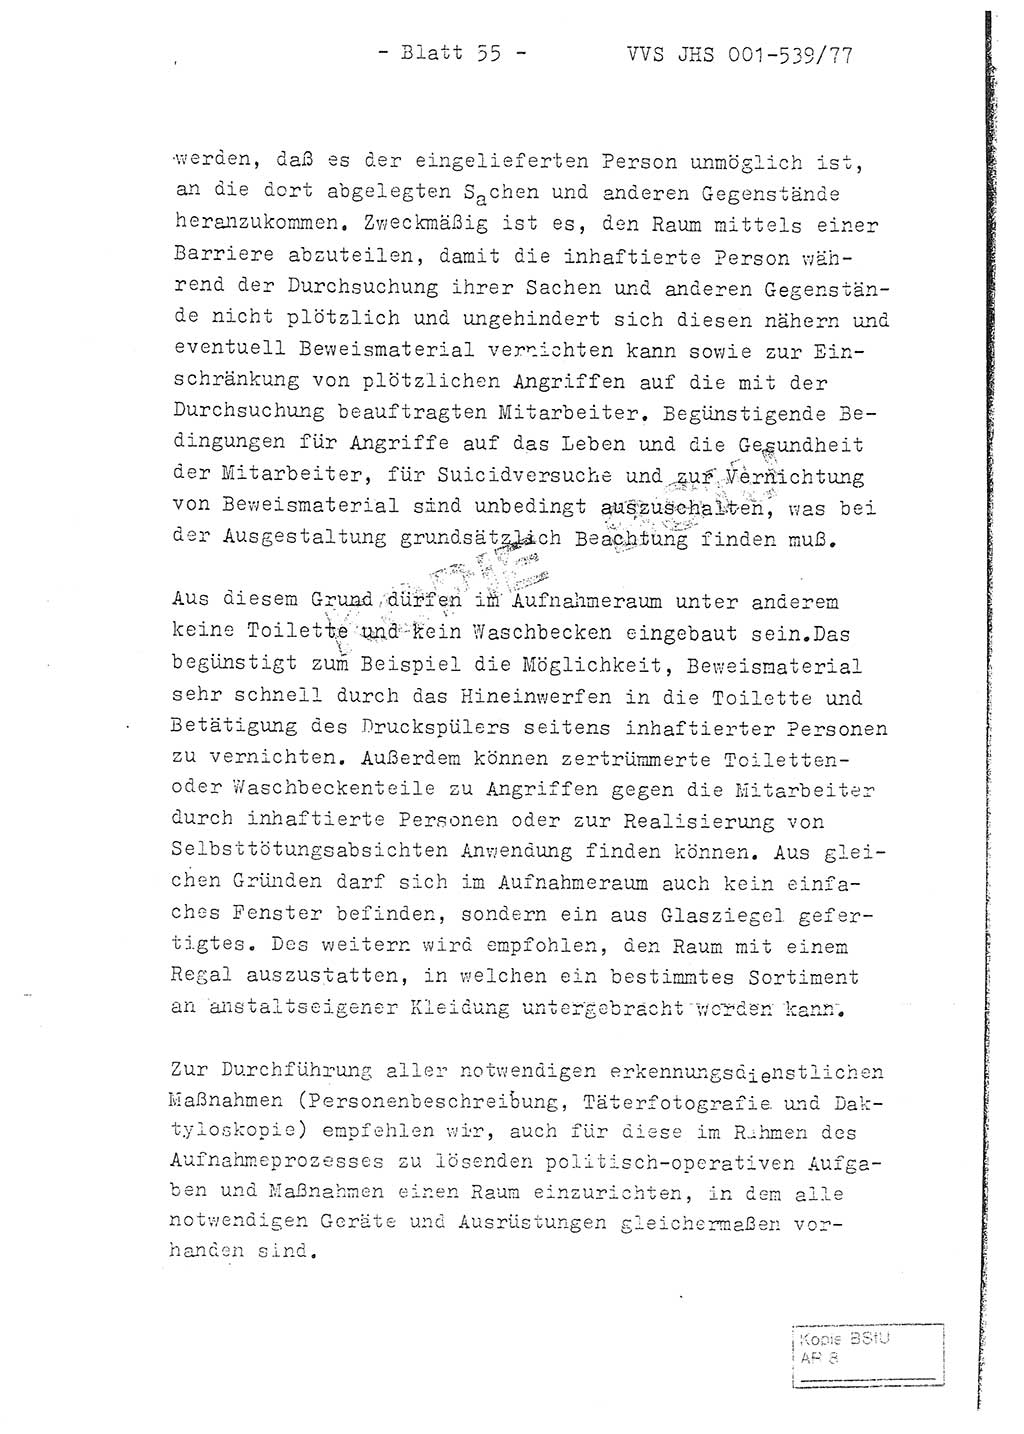 Fachschulabschlußarbeit Hauptmann Dietrich Jung (Abt. ⅩⅣ), Leutnant Klaus Klötzner (Abt. ⅩⅣ), Ministerium für Staatssicherheit (MfS) [Deutsche Demokratische Republik (DDR)], Juristische Hochschule (JHS), Vertrauliche Verschlußsache (VVS) 001-539/77, Potsdam 1978, Seite 55 (FS-Abschl.-Arb. MfS DDR JHS VVS 001-539/77 1978, S. 55)